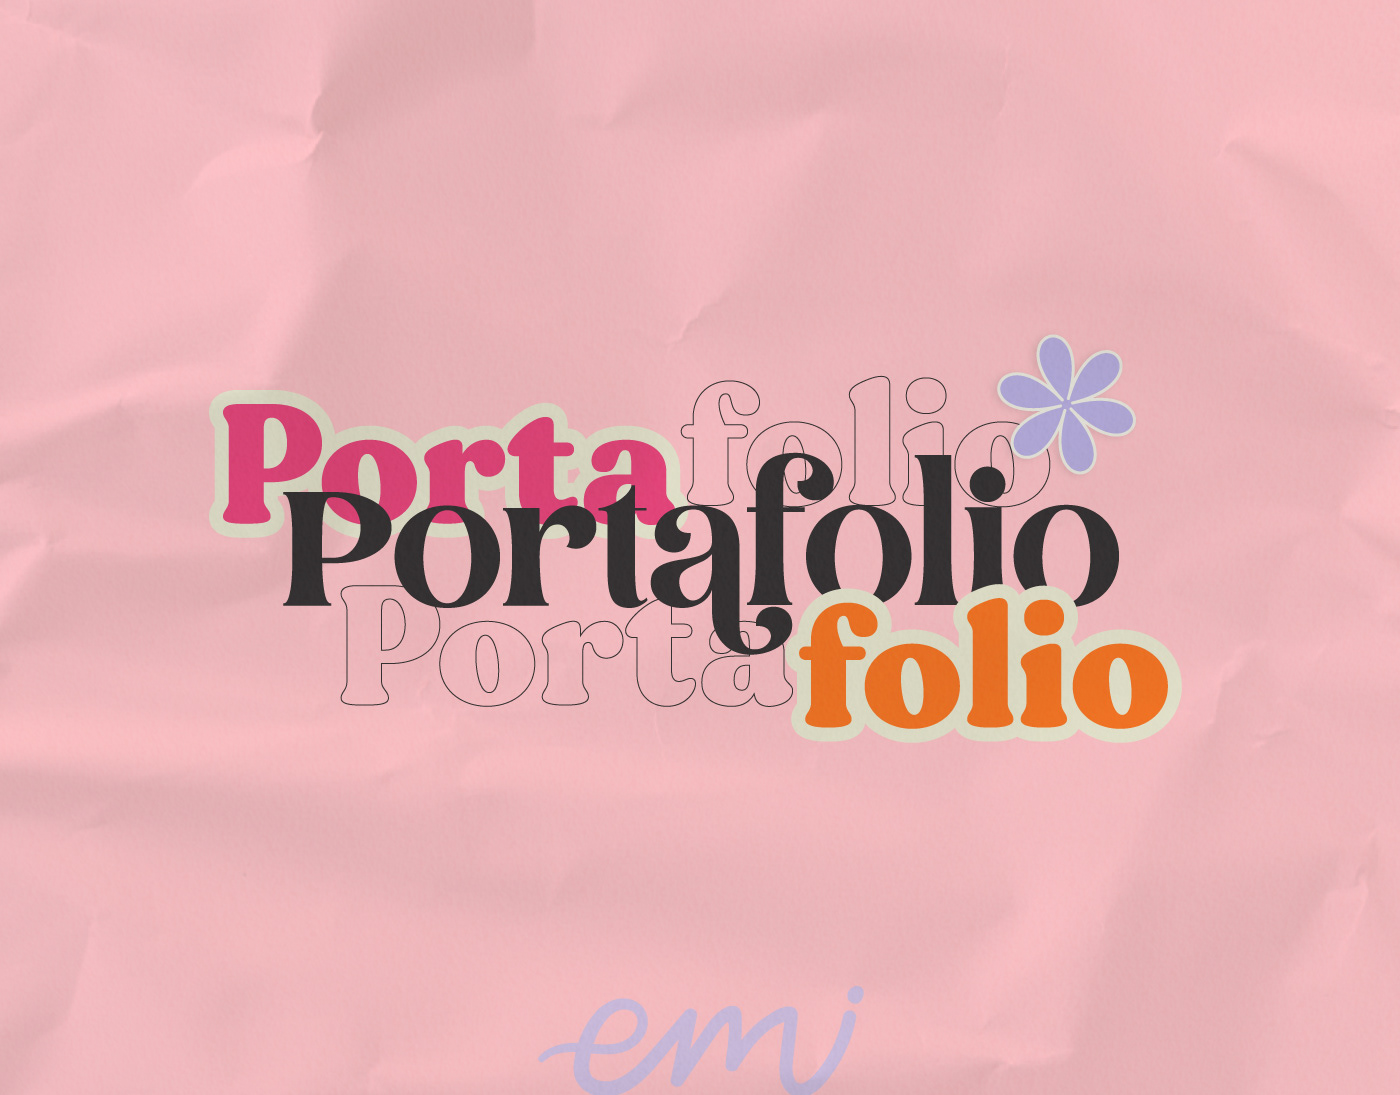 design Diseño editorial diseño gráfico editorial identidad portafolio portfolio Project publicidad